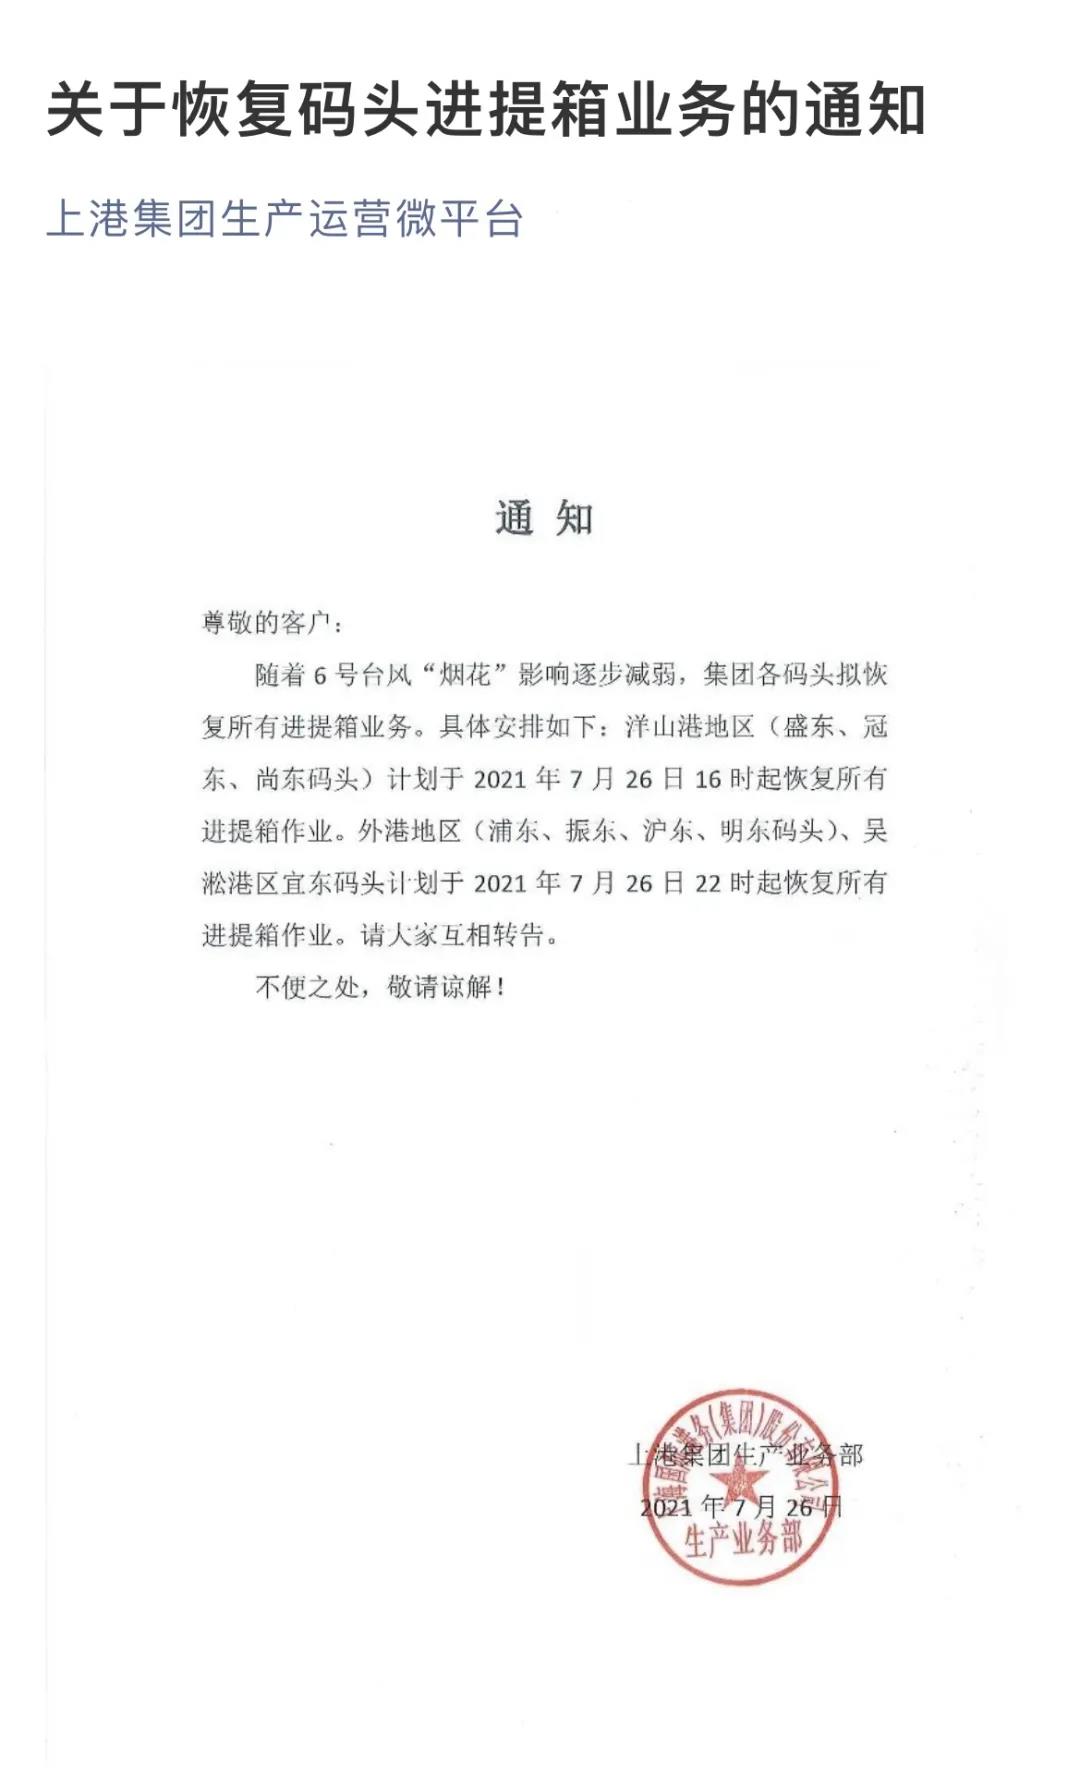 警报解除！上海、宁波两地码头恢复进提箱业务 